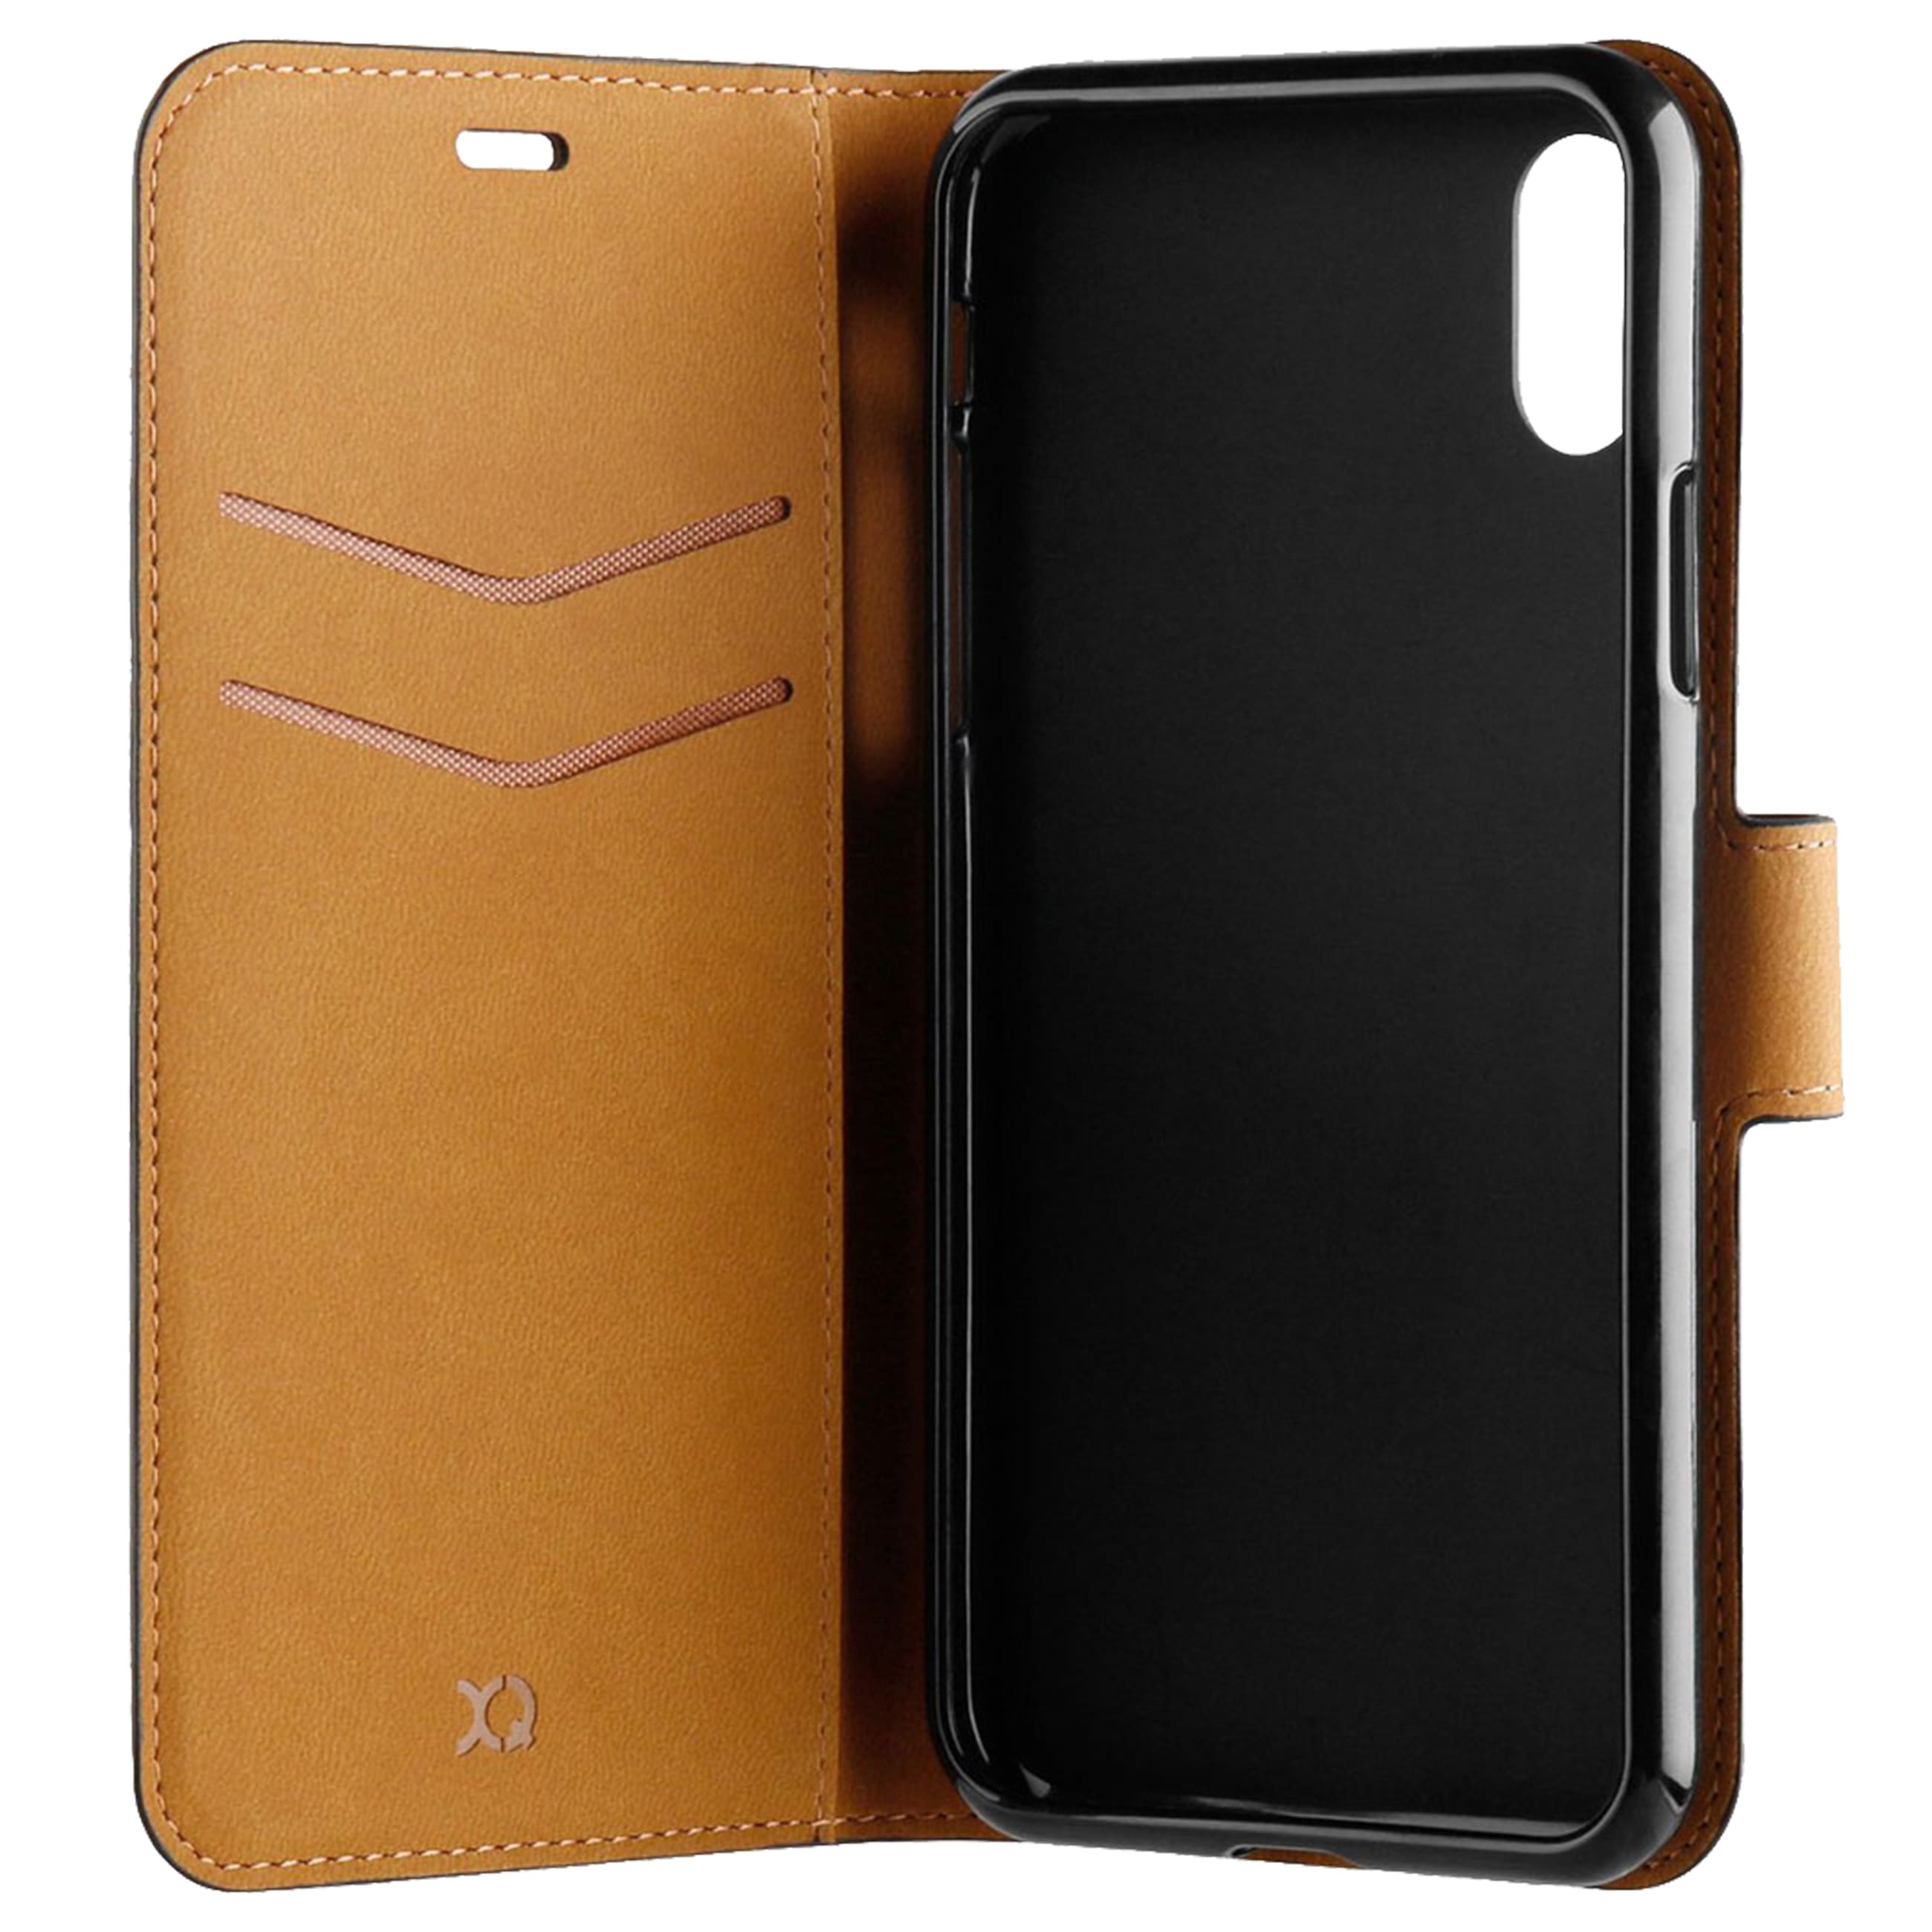 Xqisit Slim Wallet Selection - Smartphone SchutzhülleOVP geöffnet - geöffnet